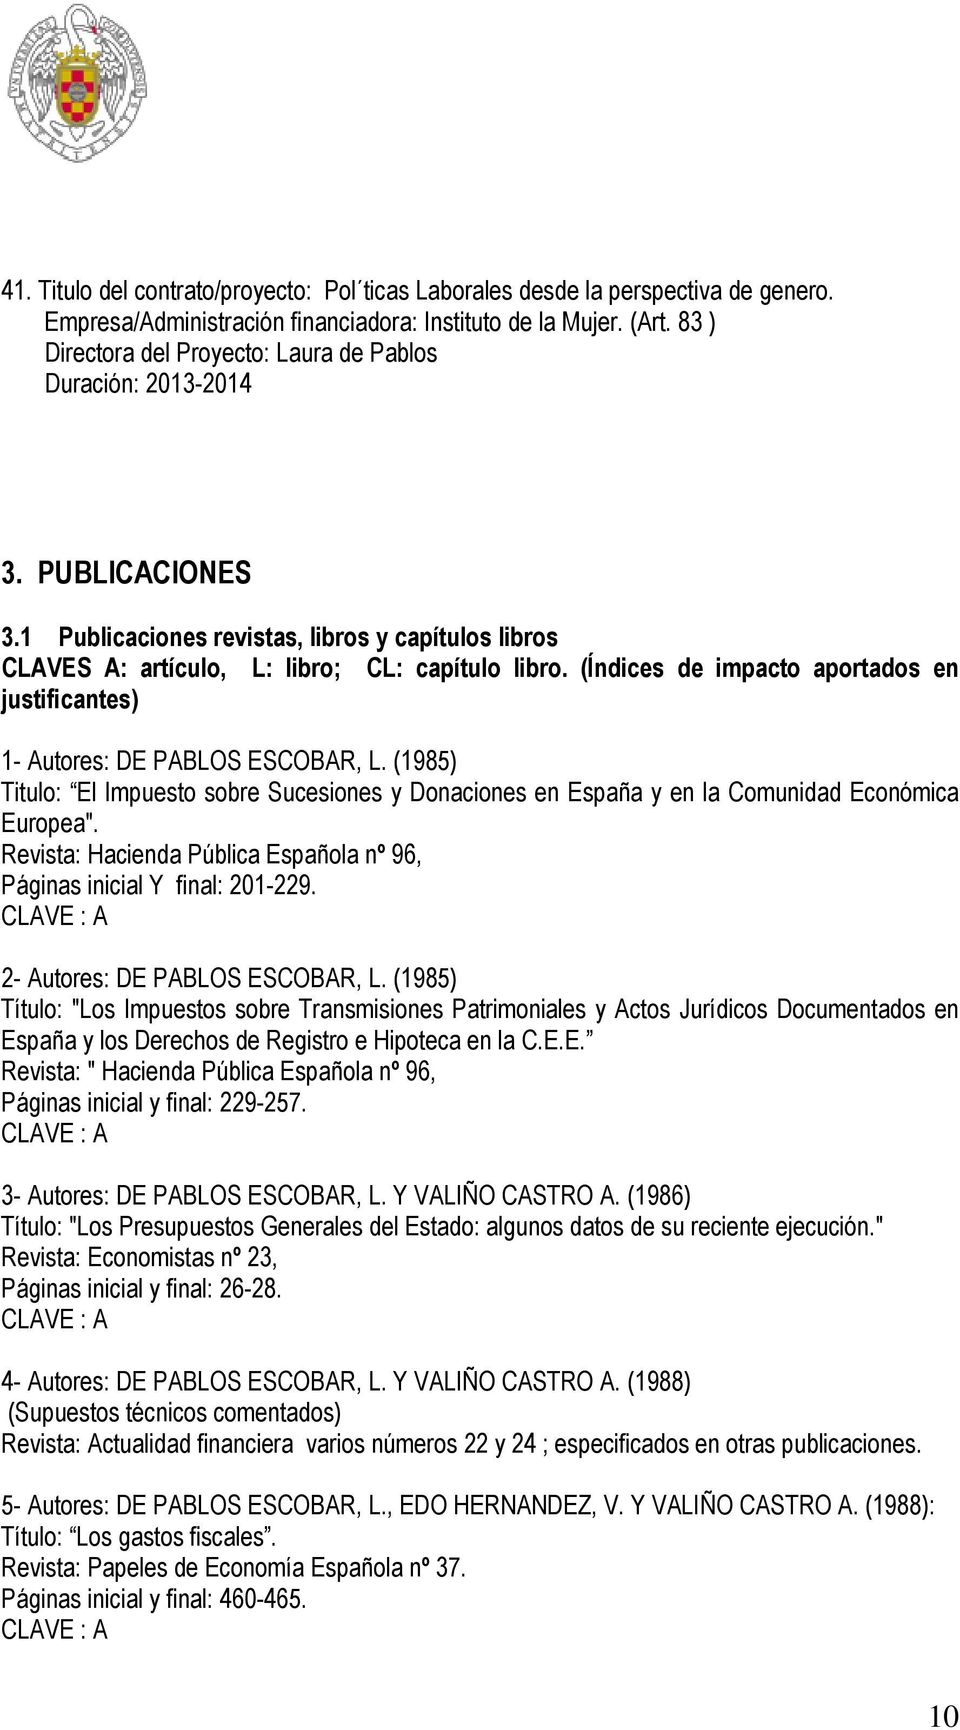 (Índices de impacto aportados en justificantes) 1- Autores: DE PABLOS ESCOBAR, L. (1985) Titulo: El Impuesto sobre Sucesiones y Donaciones en España y en la Comunidad Económica Europea".